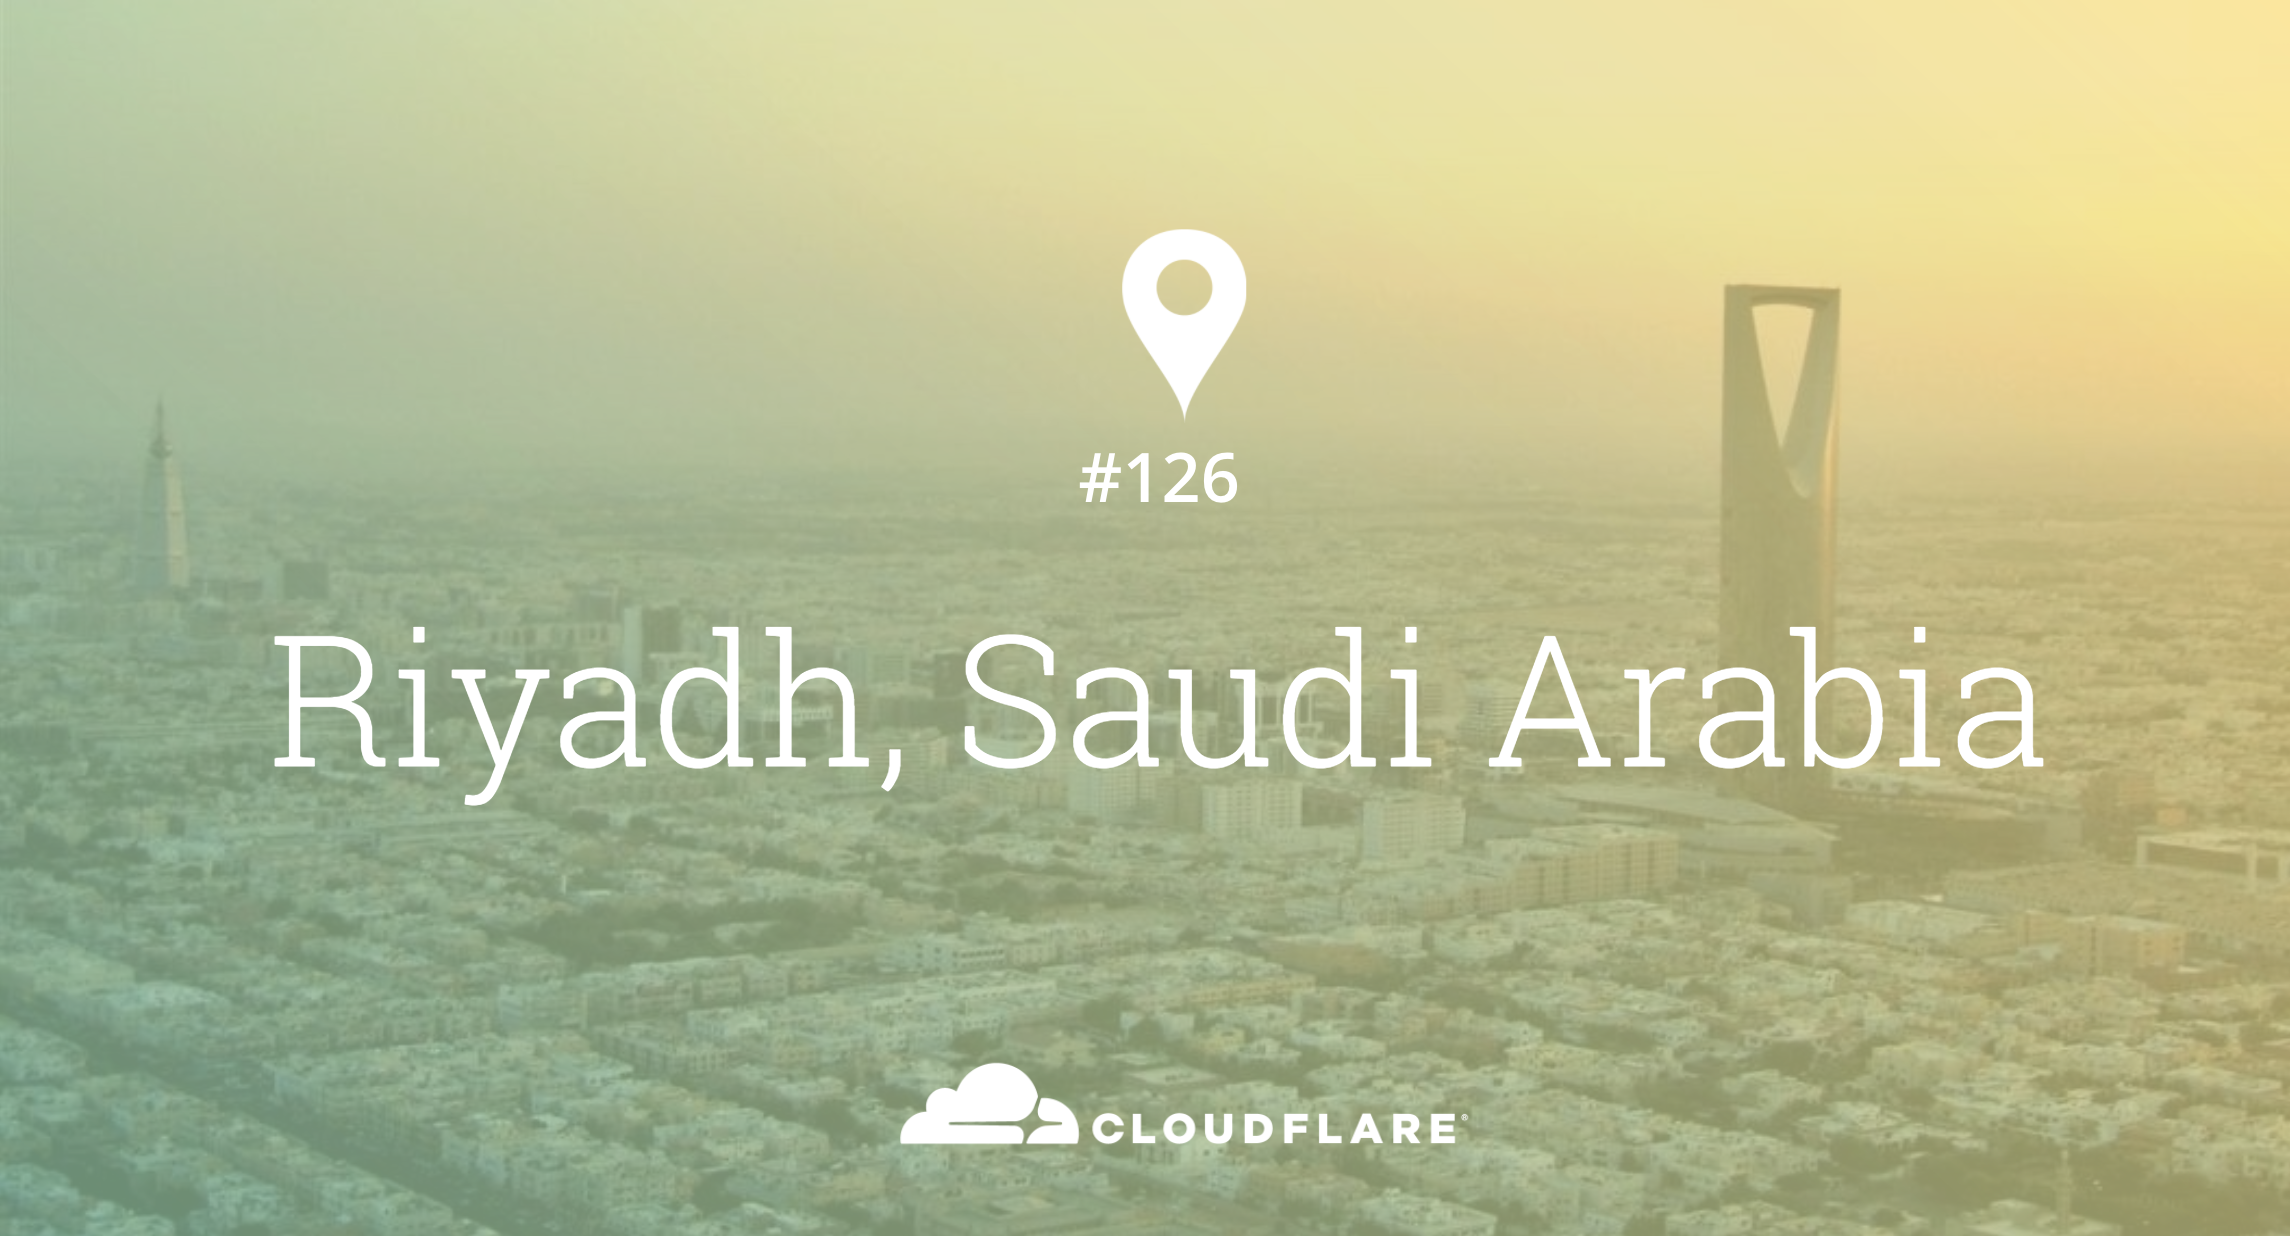 Riyadh, Saudi Arabia: Cloudflare Data Center #126